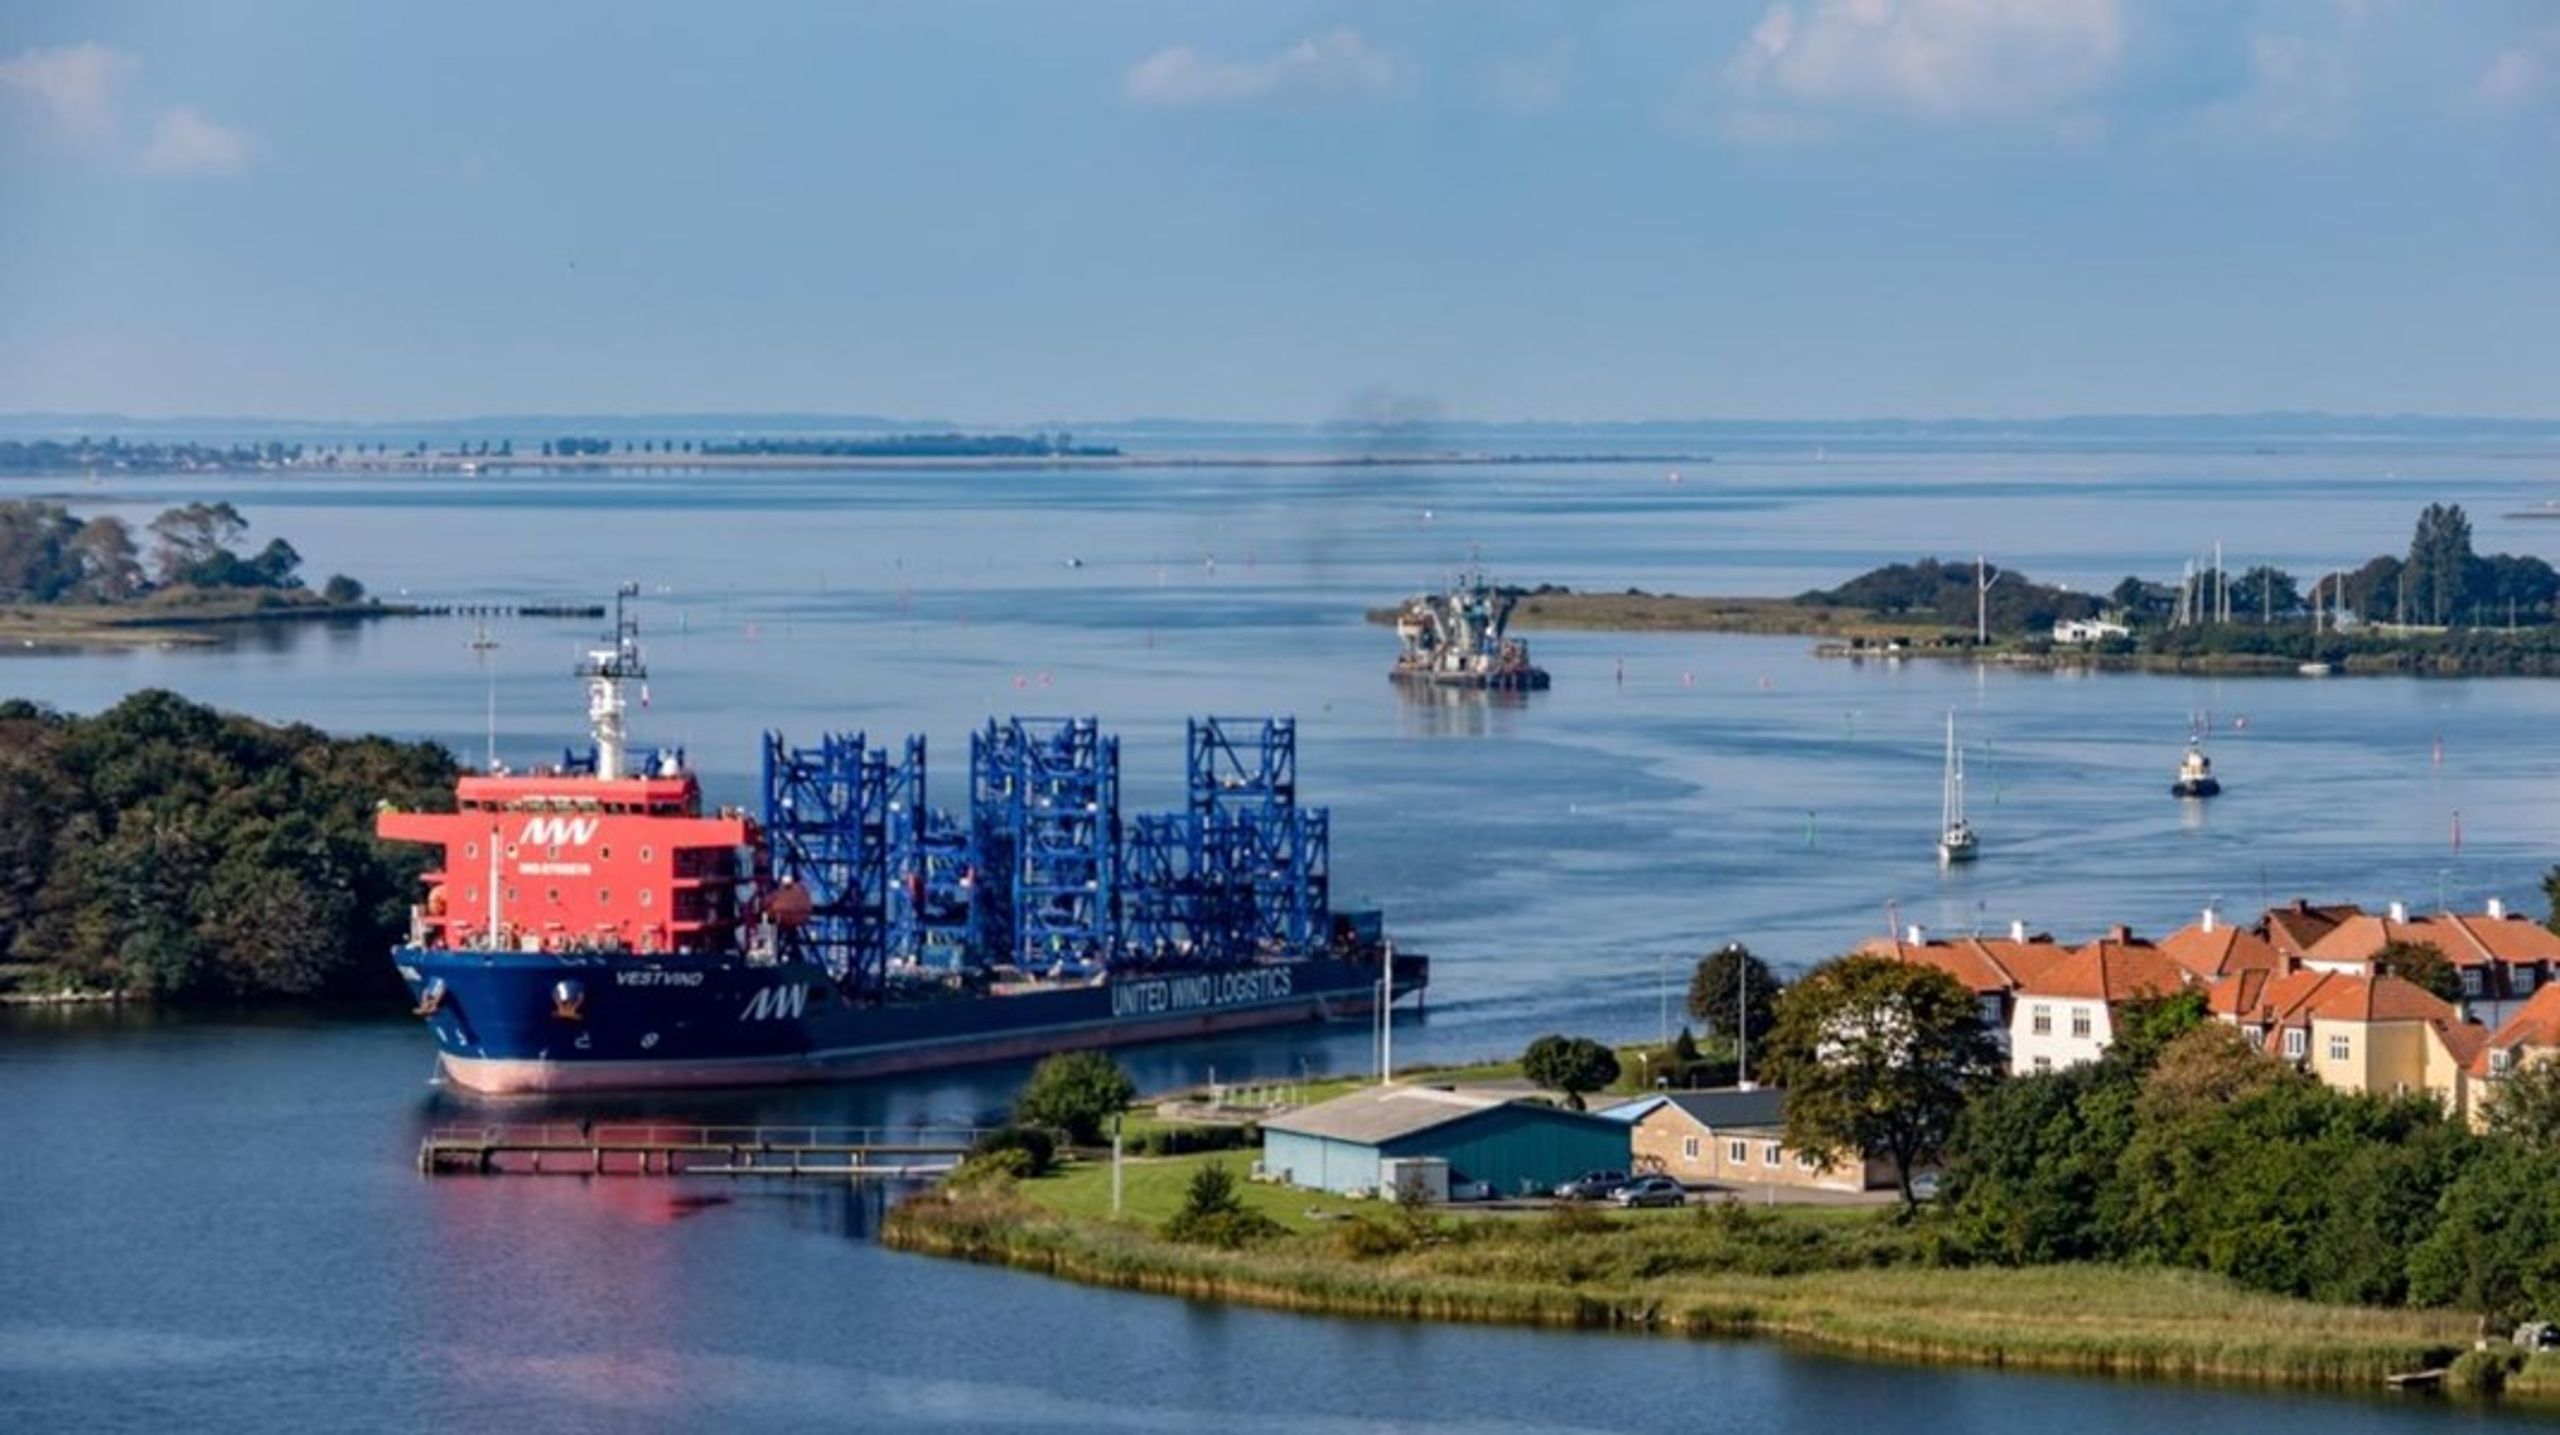 Nakskov Havn vil gerne udvide sin sejlrende, så der bliver mulighed for at udvide vindmølleproduktionen på havnen.